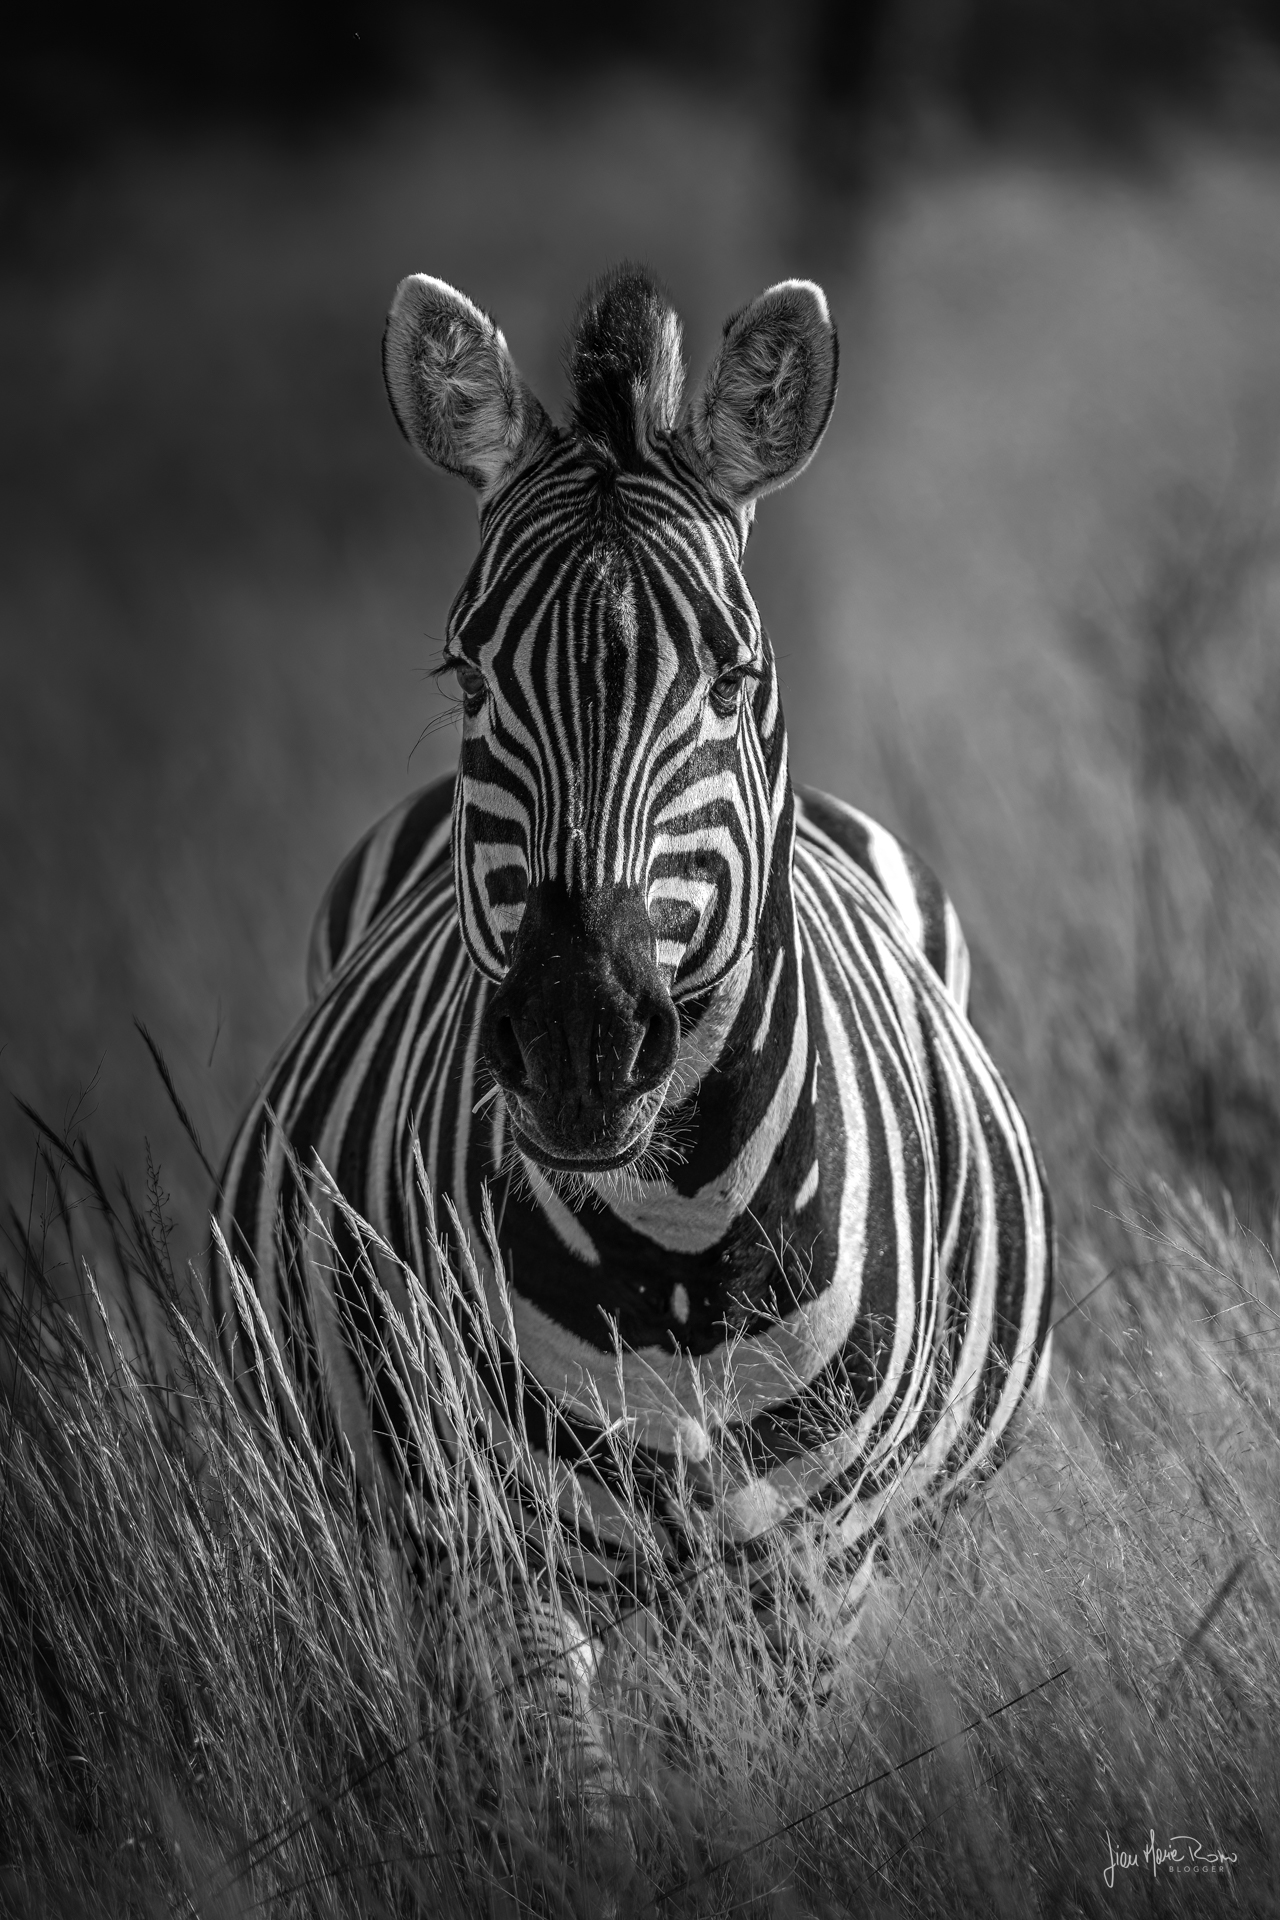 vista di zebra di fronte in bn